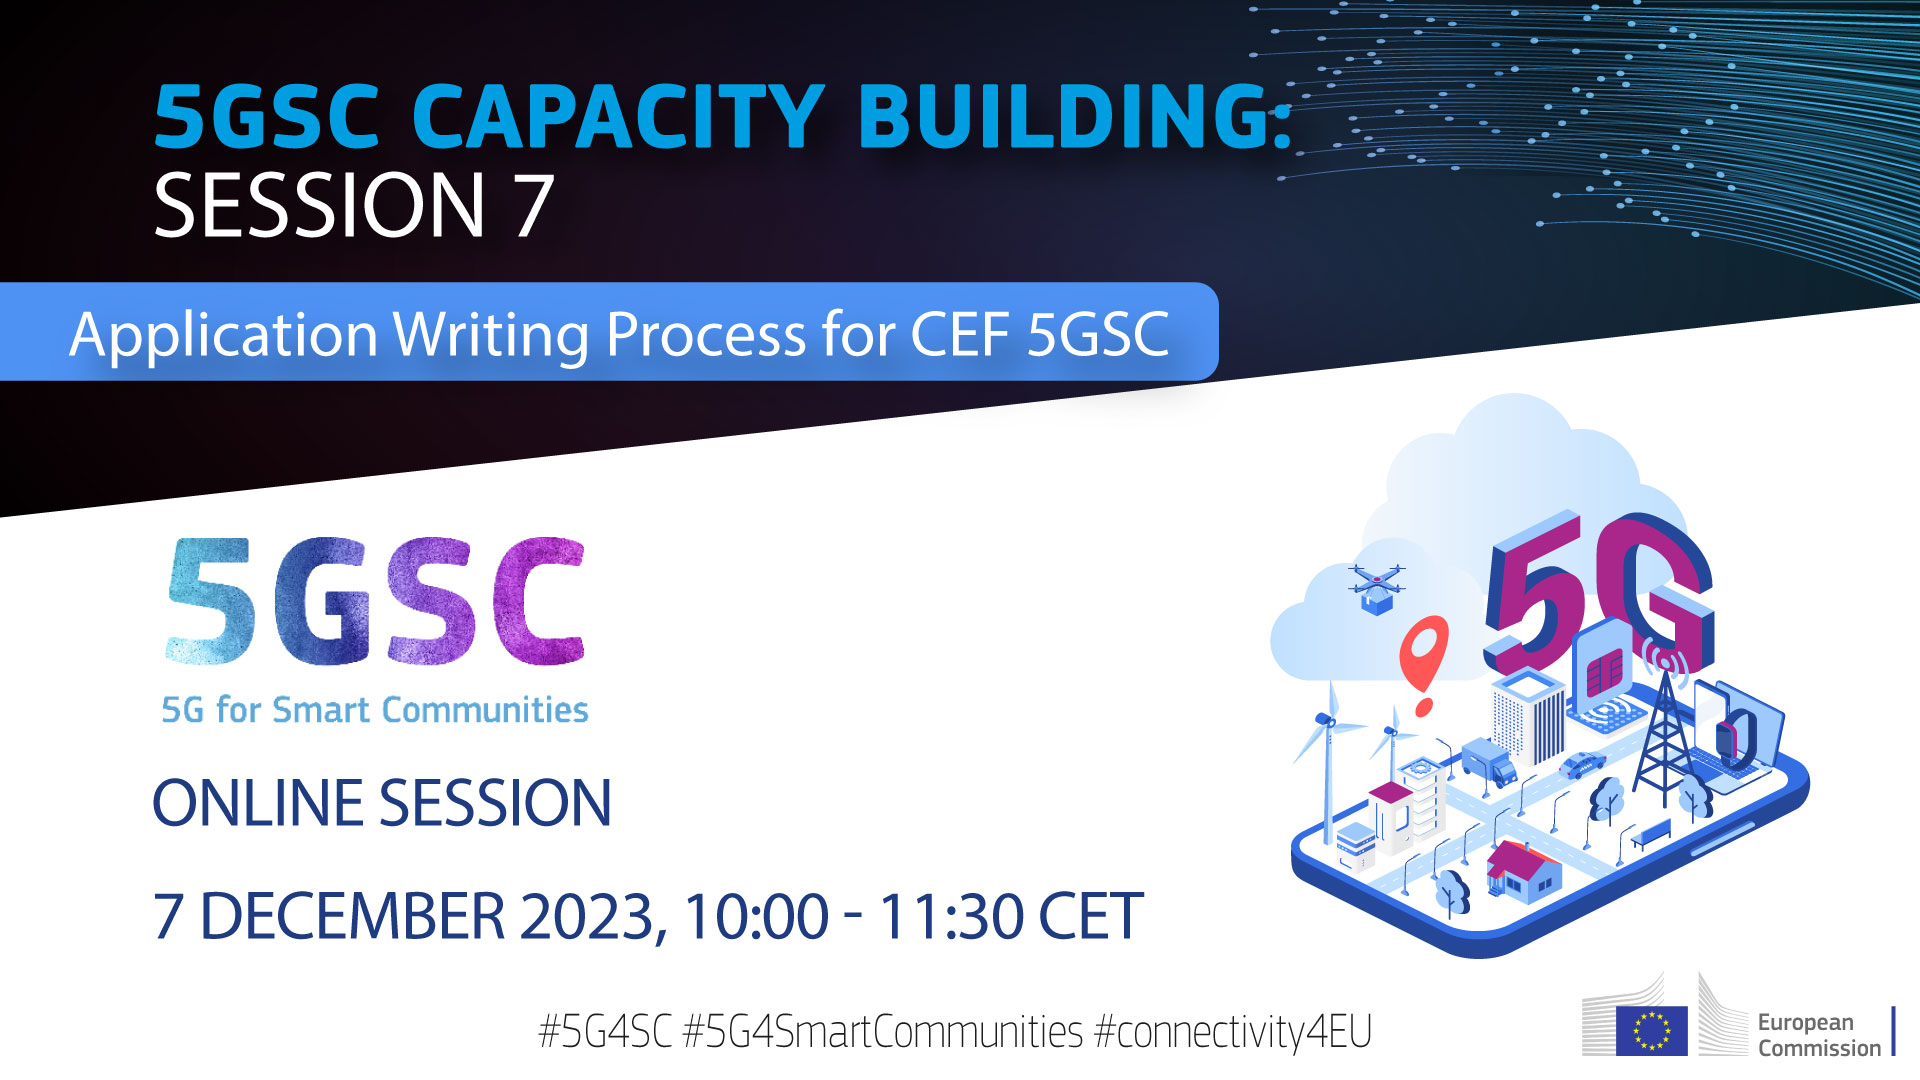 plakát akce s textem Platforma na podporu 5GSC Vás s potěšením pozve na nadcházející 7. zasedání věnované budování kapacit 5GSC, „Application Management for CEF 5GSC“ a datum/čas akce.